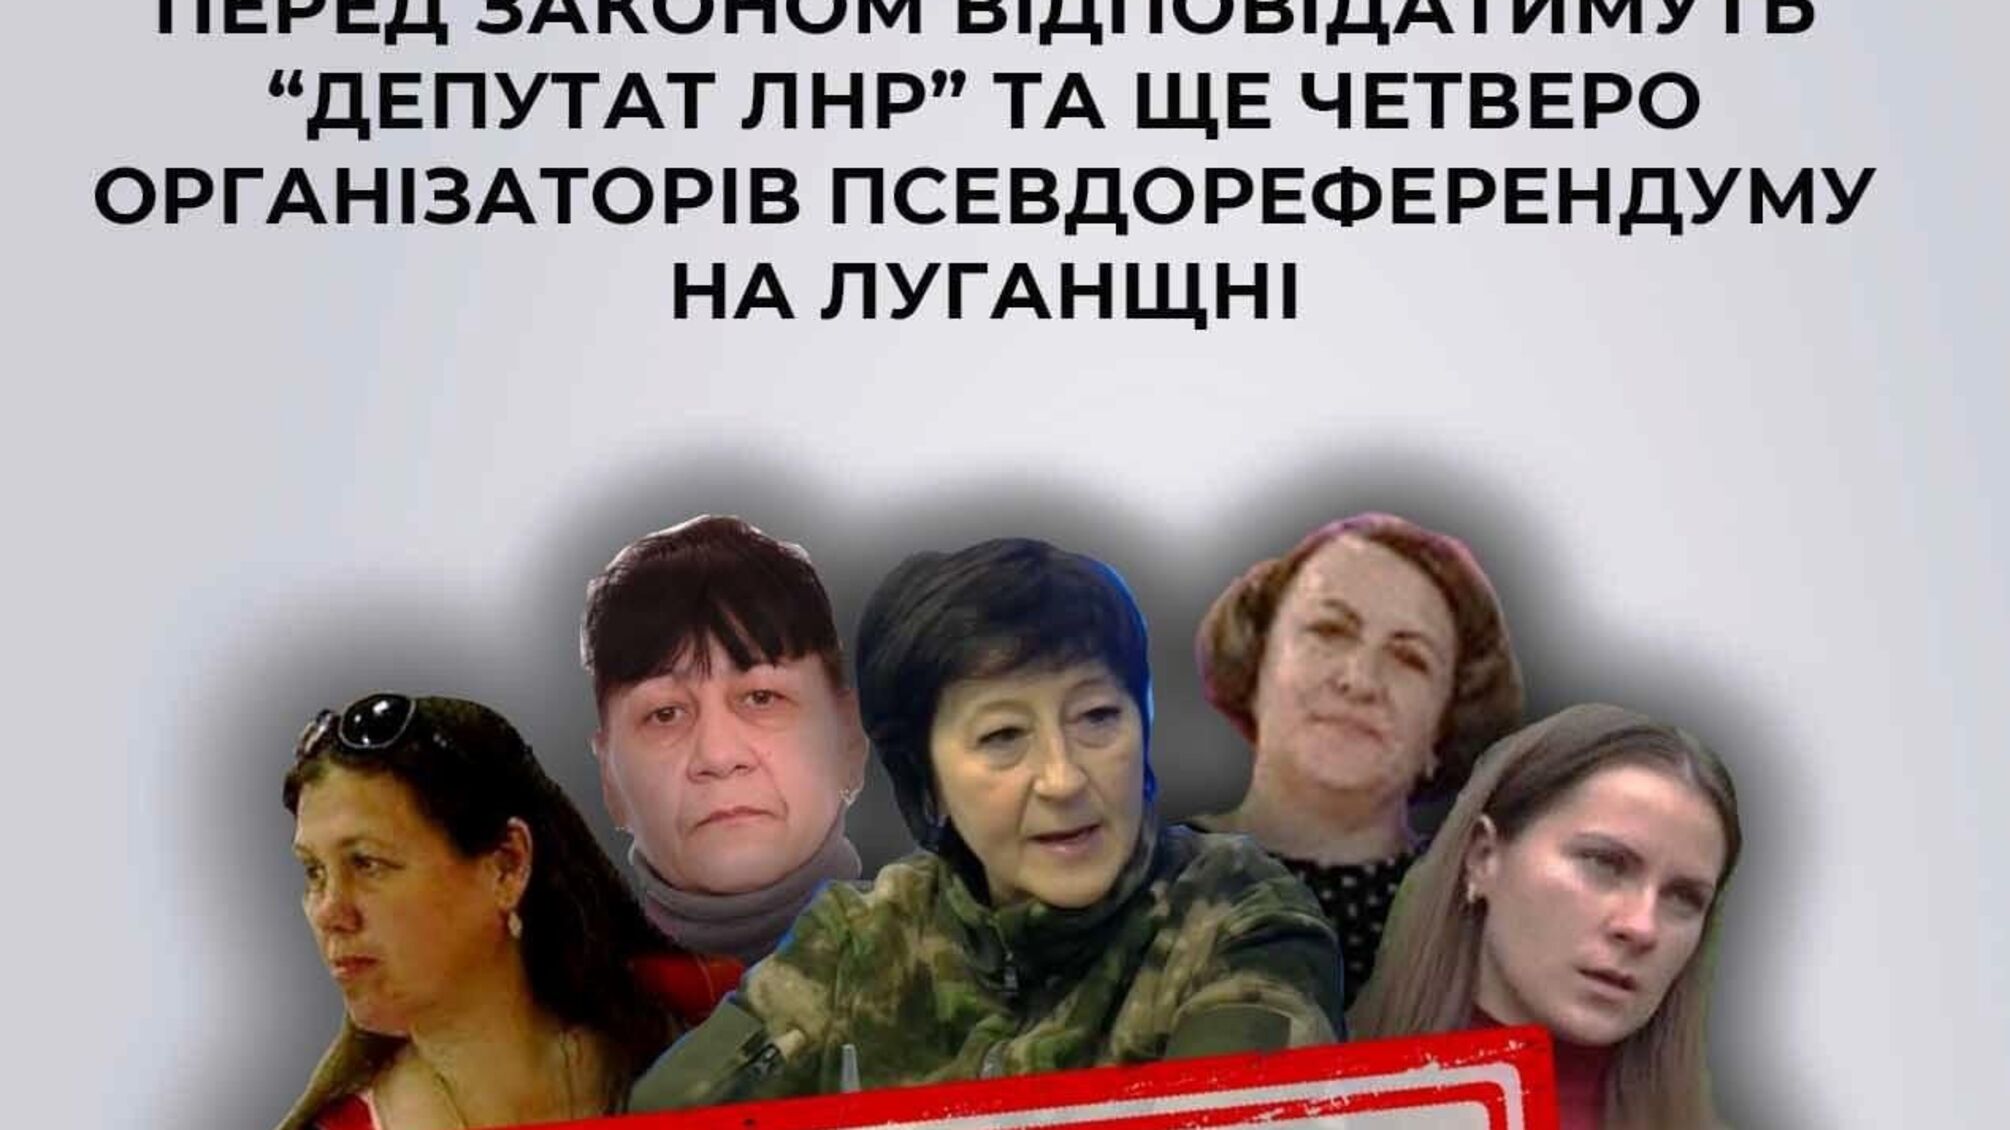  Засуджено пʼятьох колаборантів:  'депутат лнр' та четверо організаторів псевдореферендуму на Луганщині